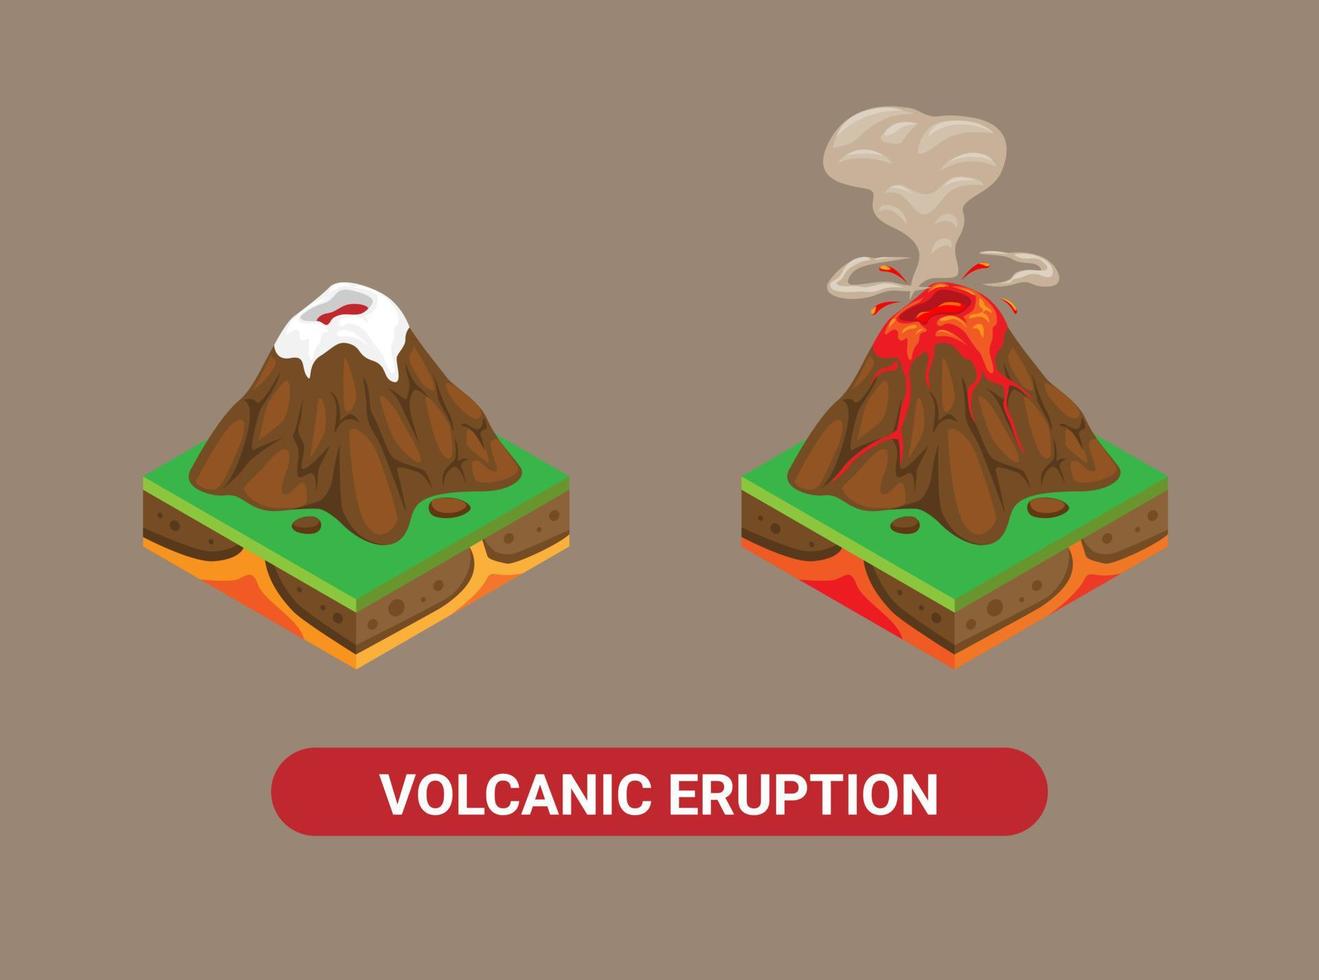 vulkanutbrott berg. naturkatastrof isometrisk uppsättning illustration vektor